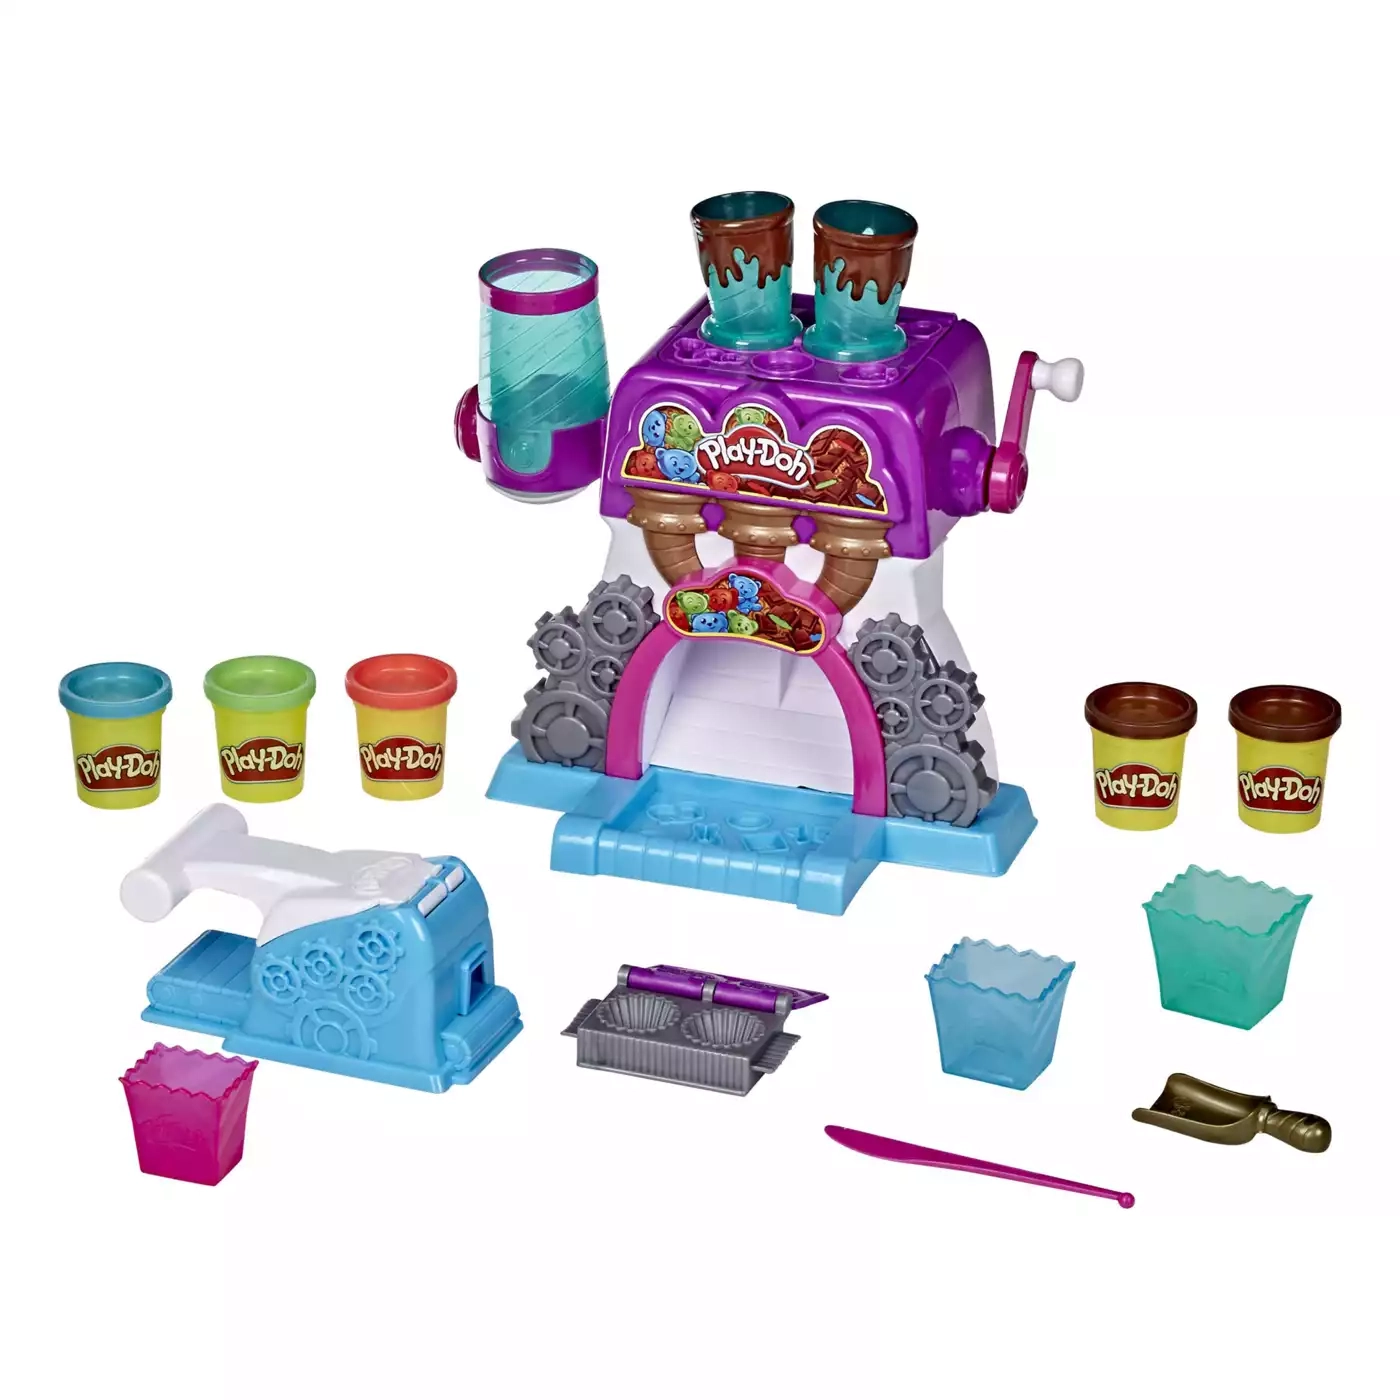 Bonbon-Fabrik Play-Doh 2000579084201 1